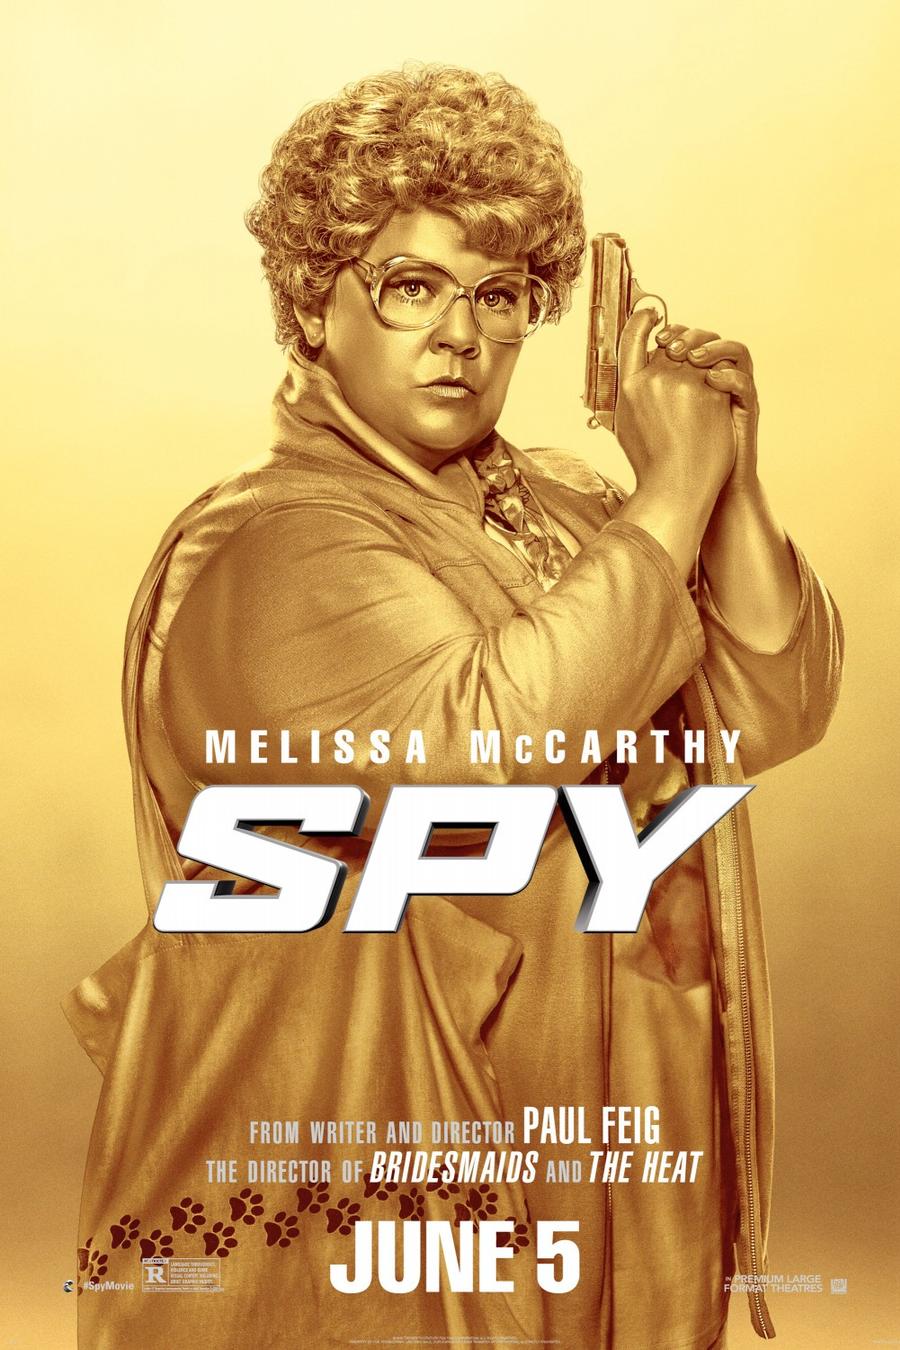 Póster de la película "Spy".